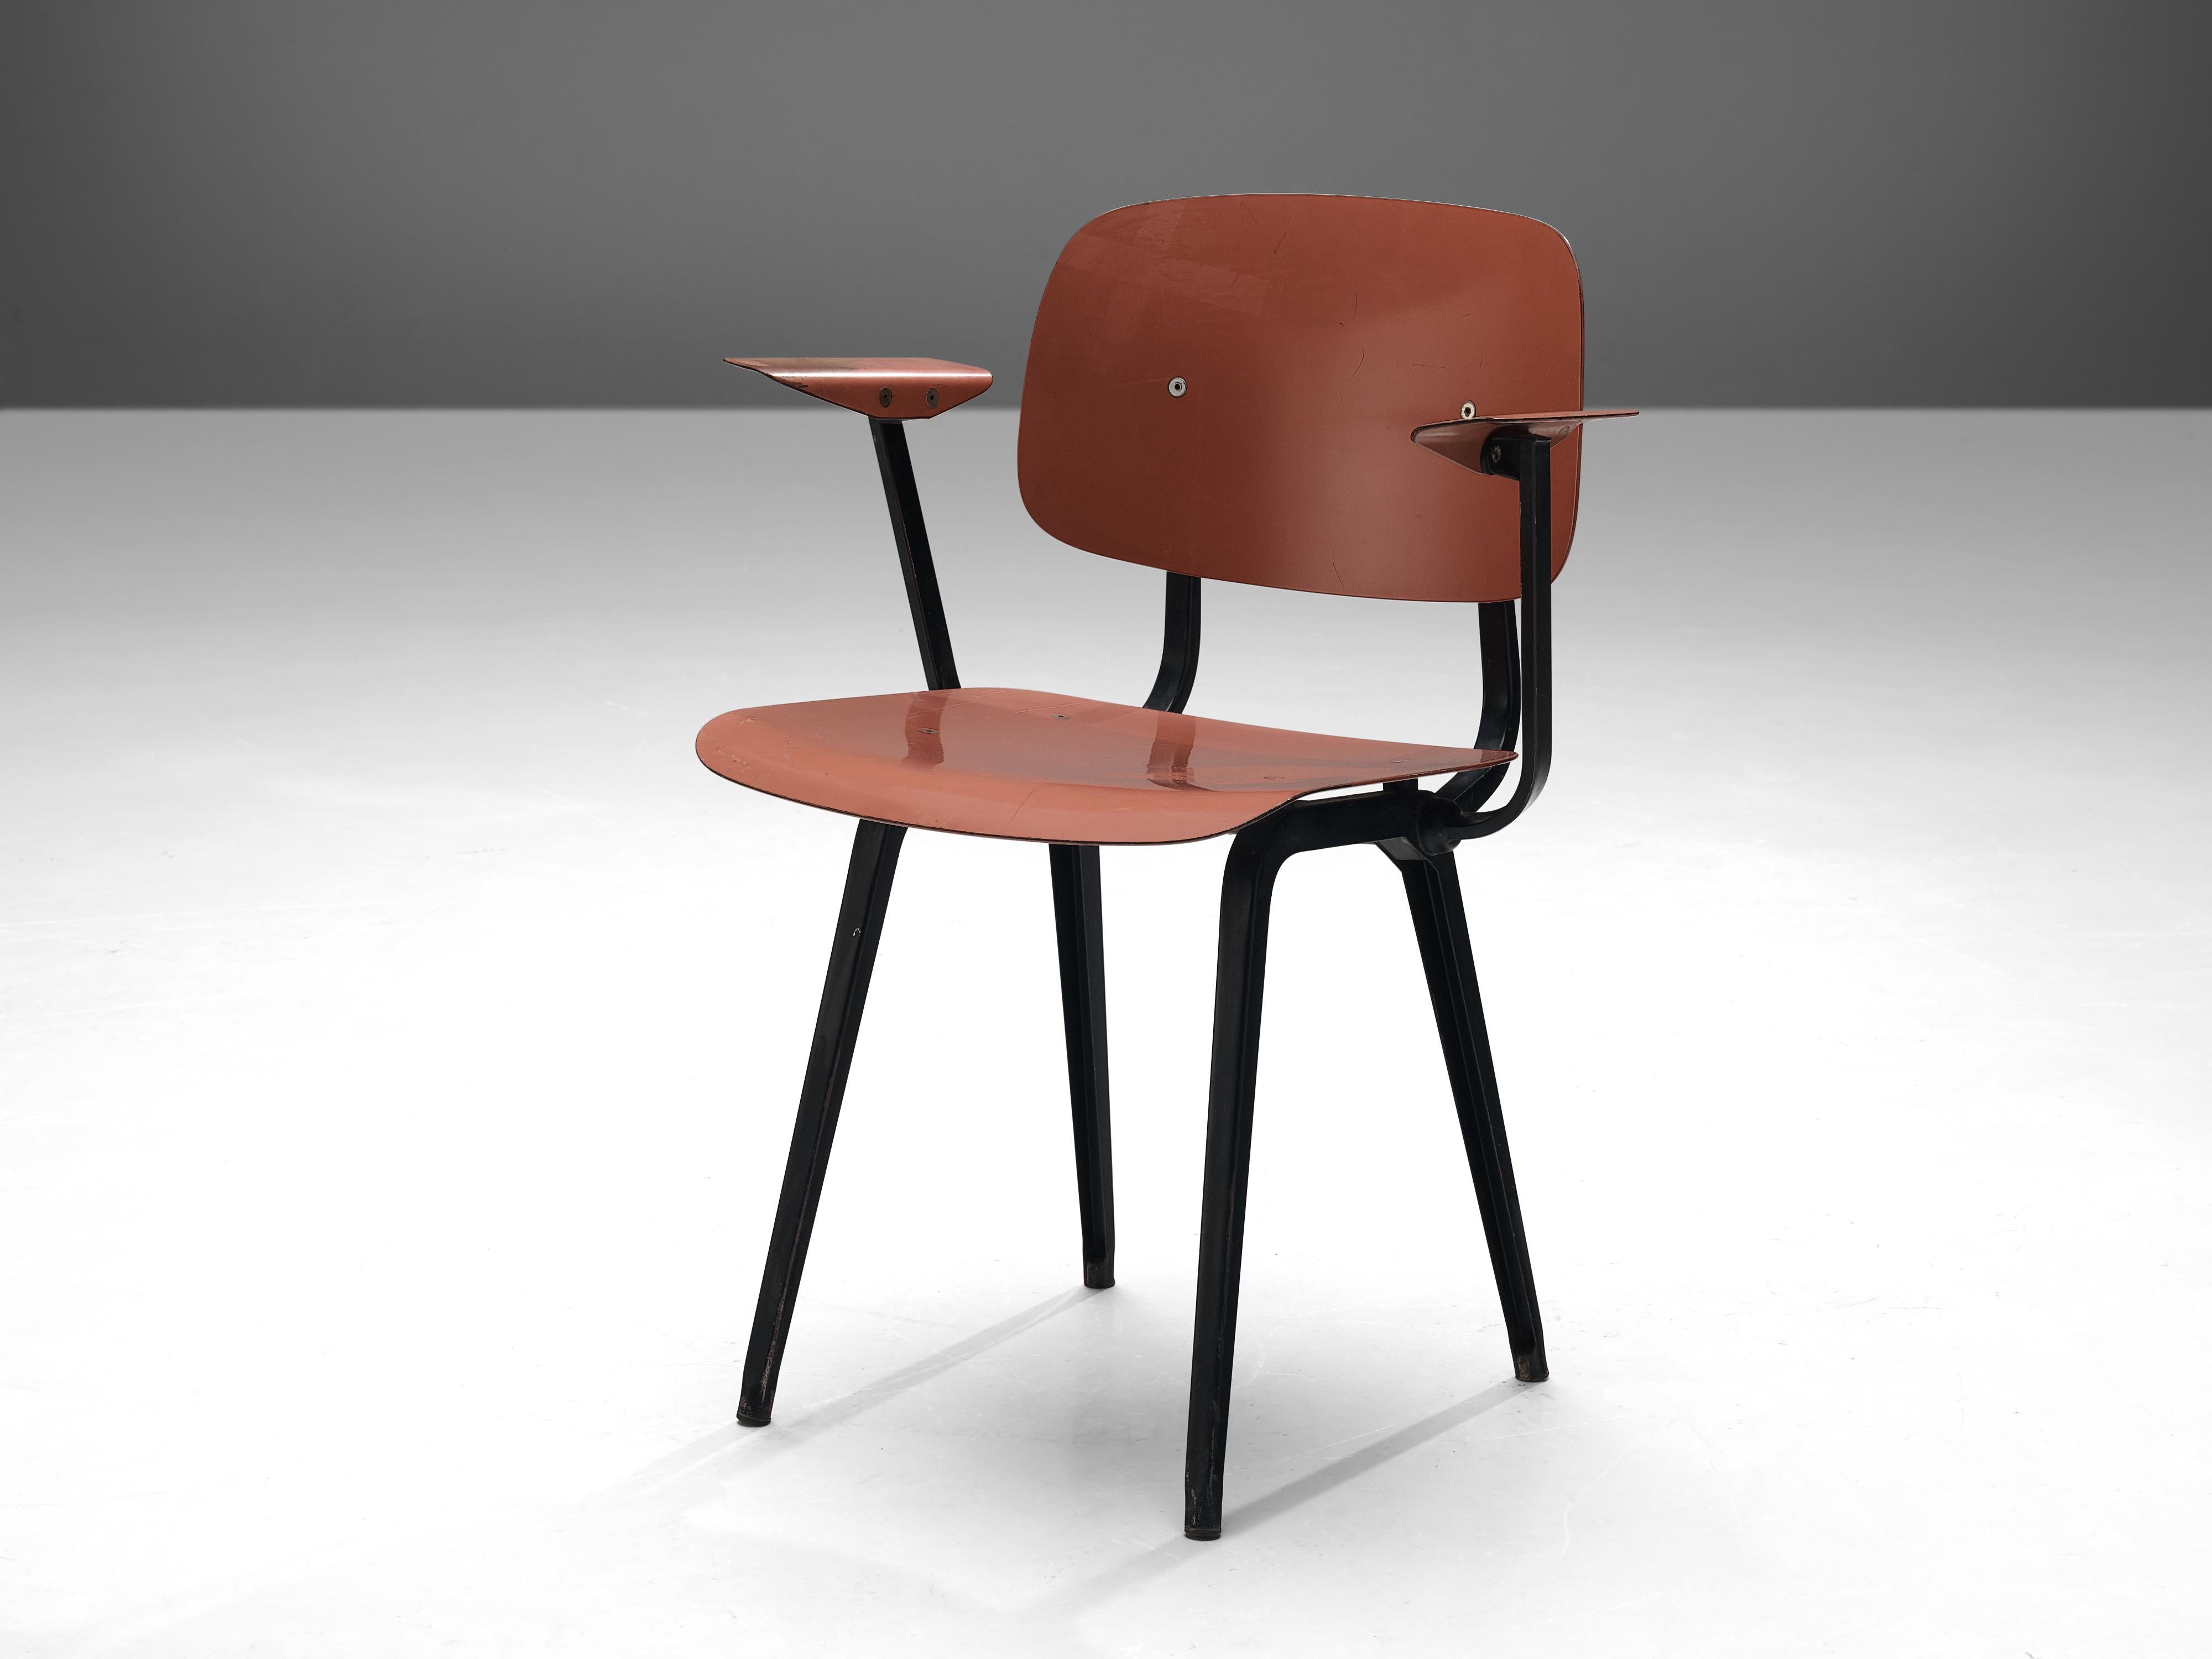 Friso Kramer für Cirkel Ahrend, Stuhl, Ciranol, Metall, Niederlande, Entwurf 1953

Dieser Stuhl mit dem Namen 